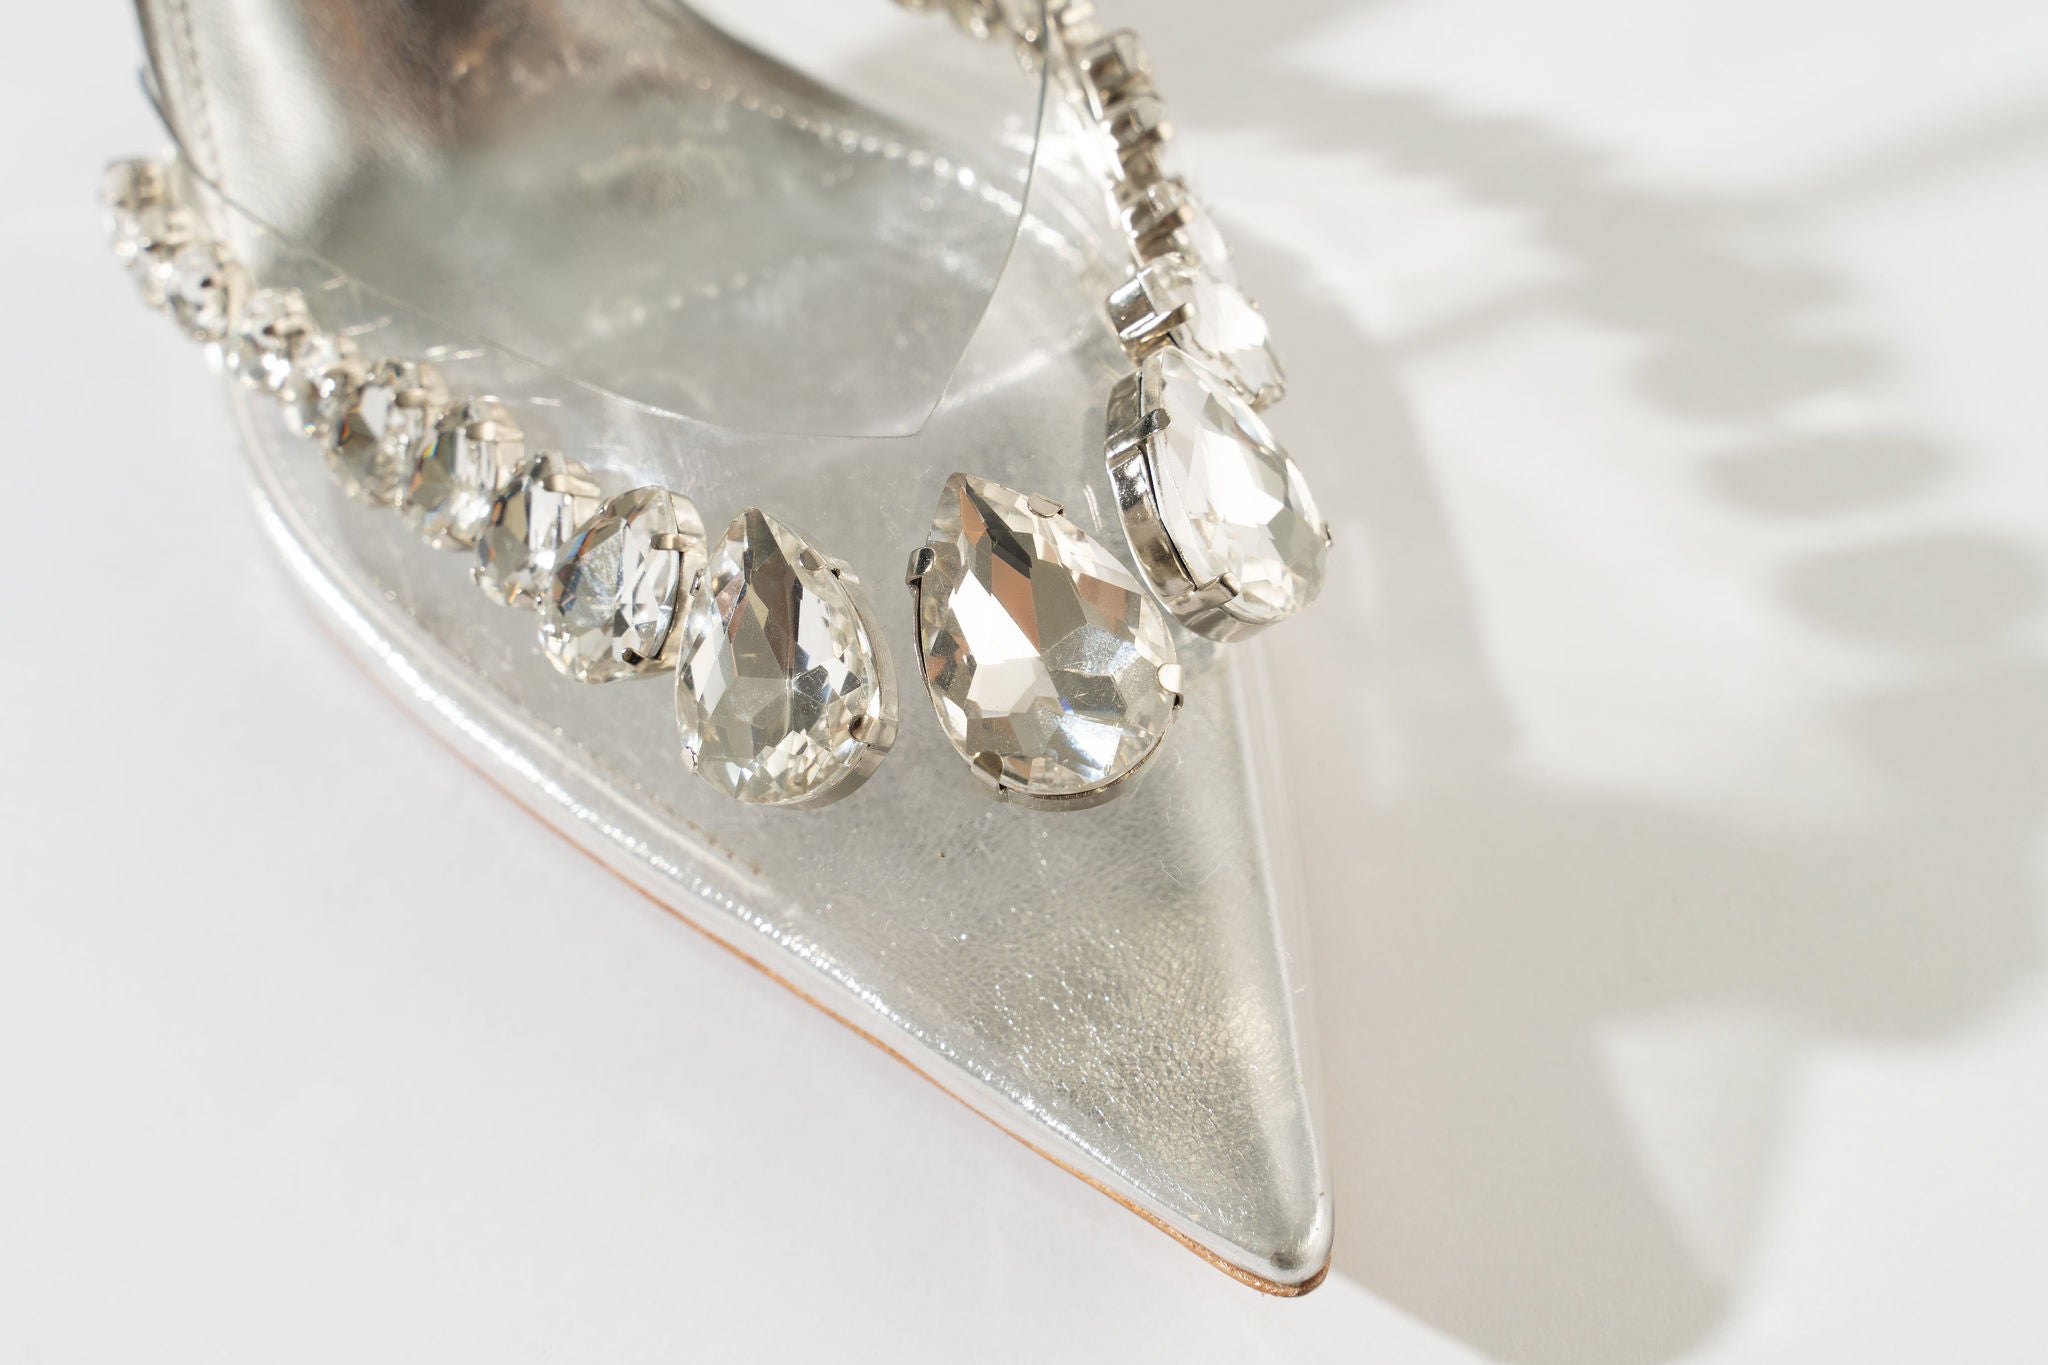 Wonderland Dimond Crystal Embellished Strappy 80MM Sandals - Clear